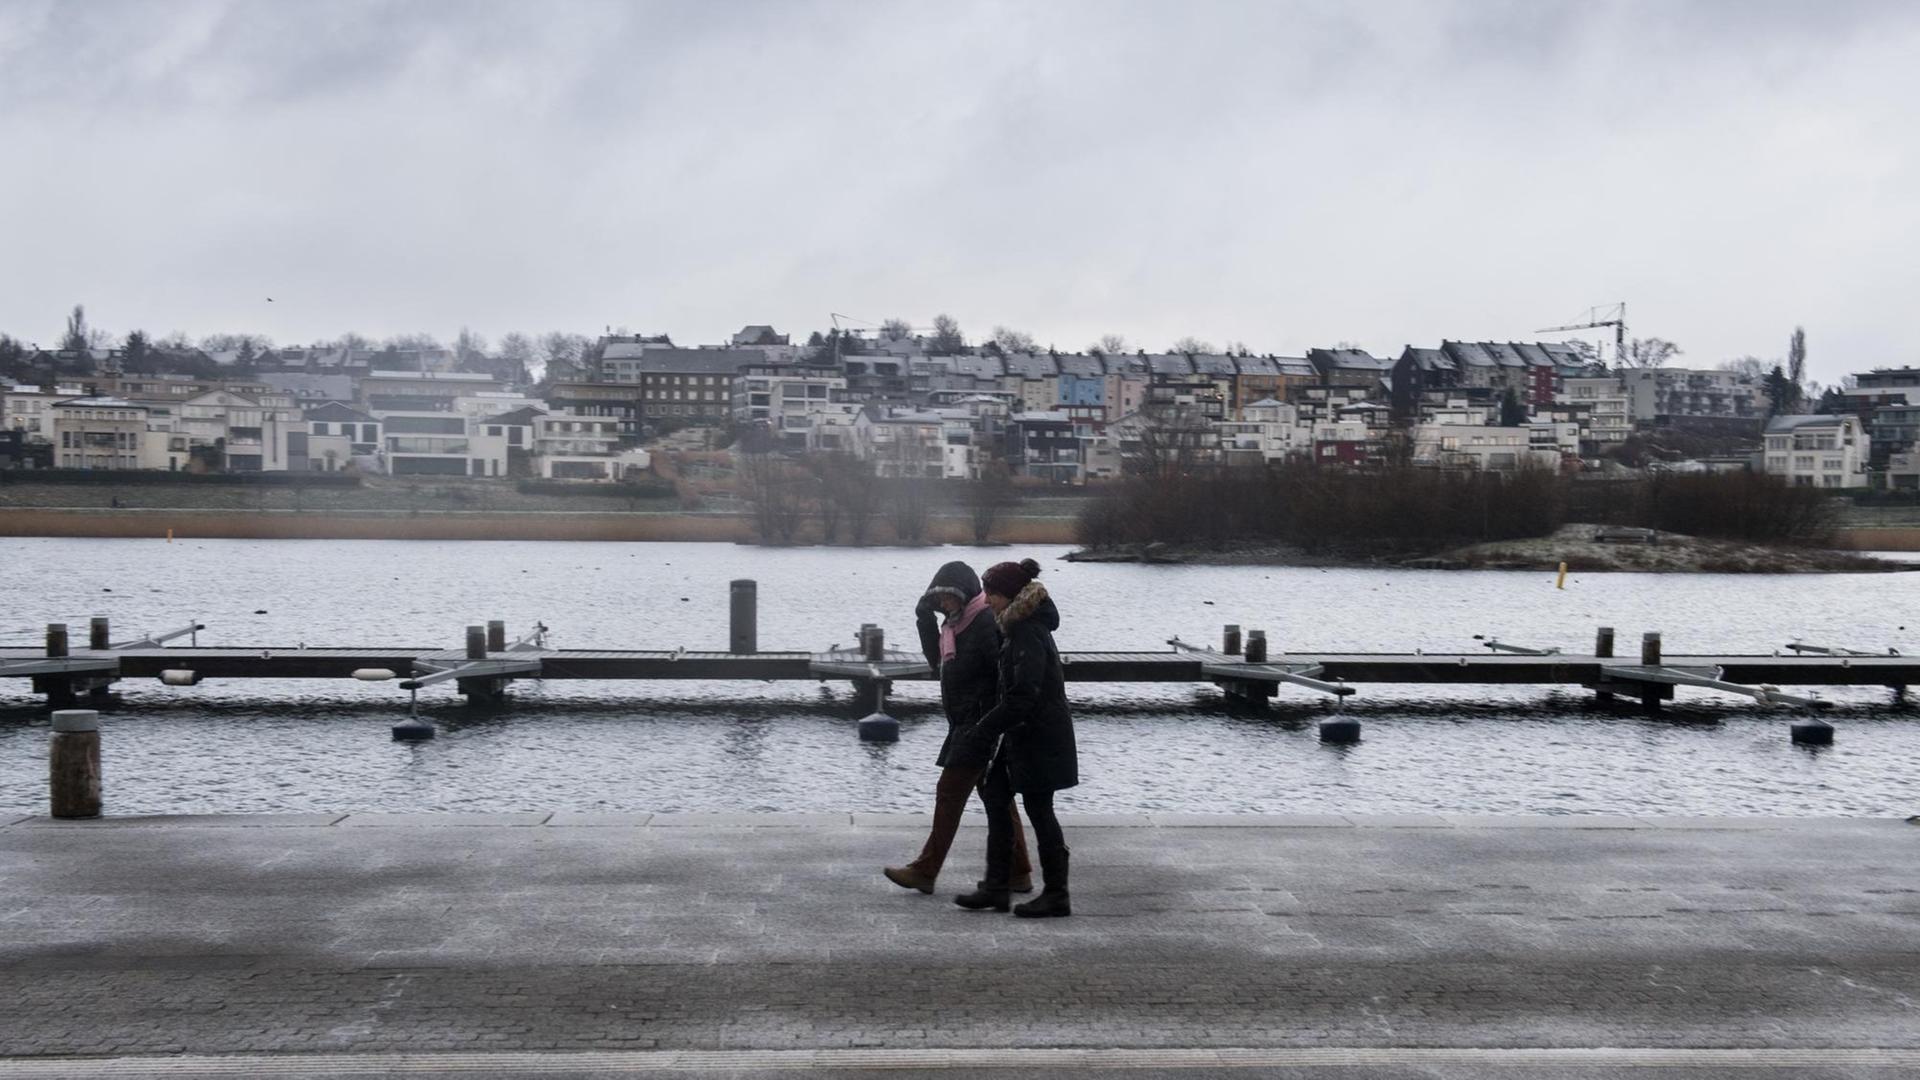 Zwei Frauen gehen bei nass-kaltem Wetter am Ufer des Phoenix Sees in Dortmund (Nordrhein-Westfalen) spazieren.